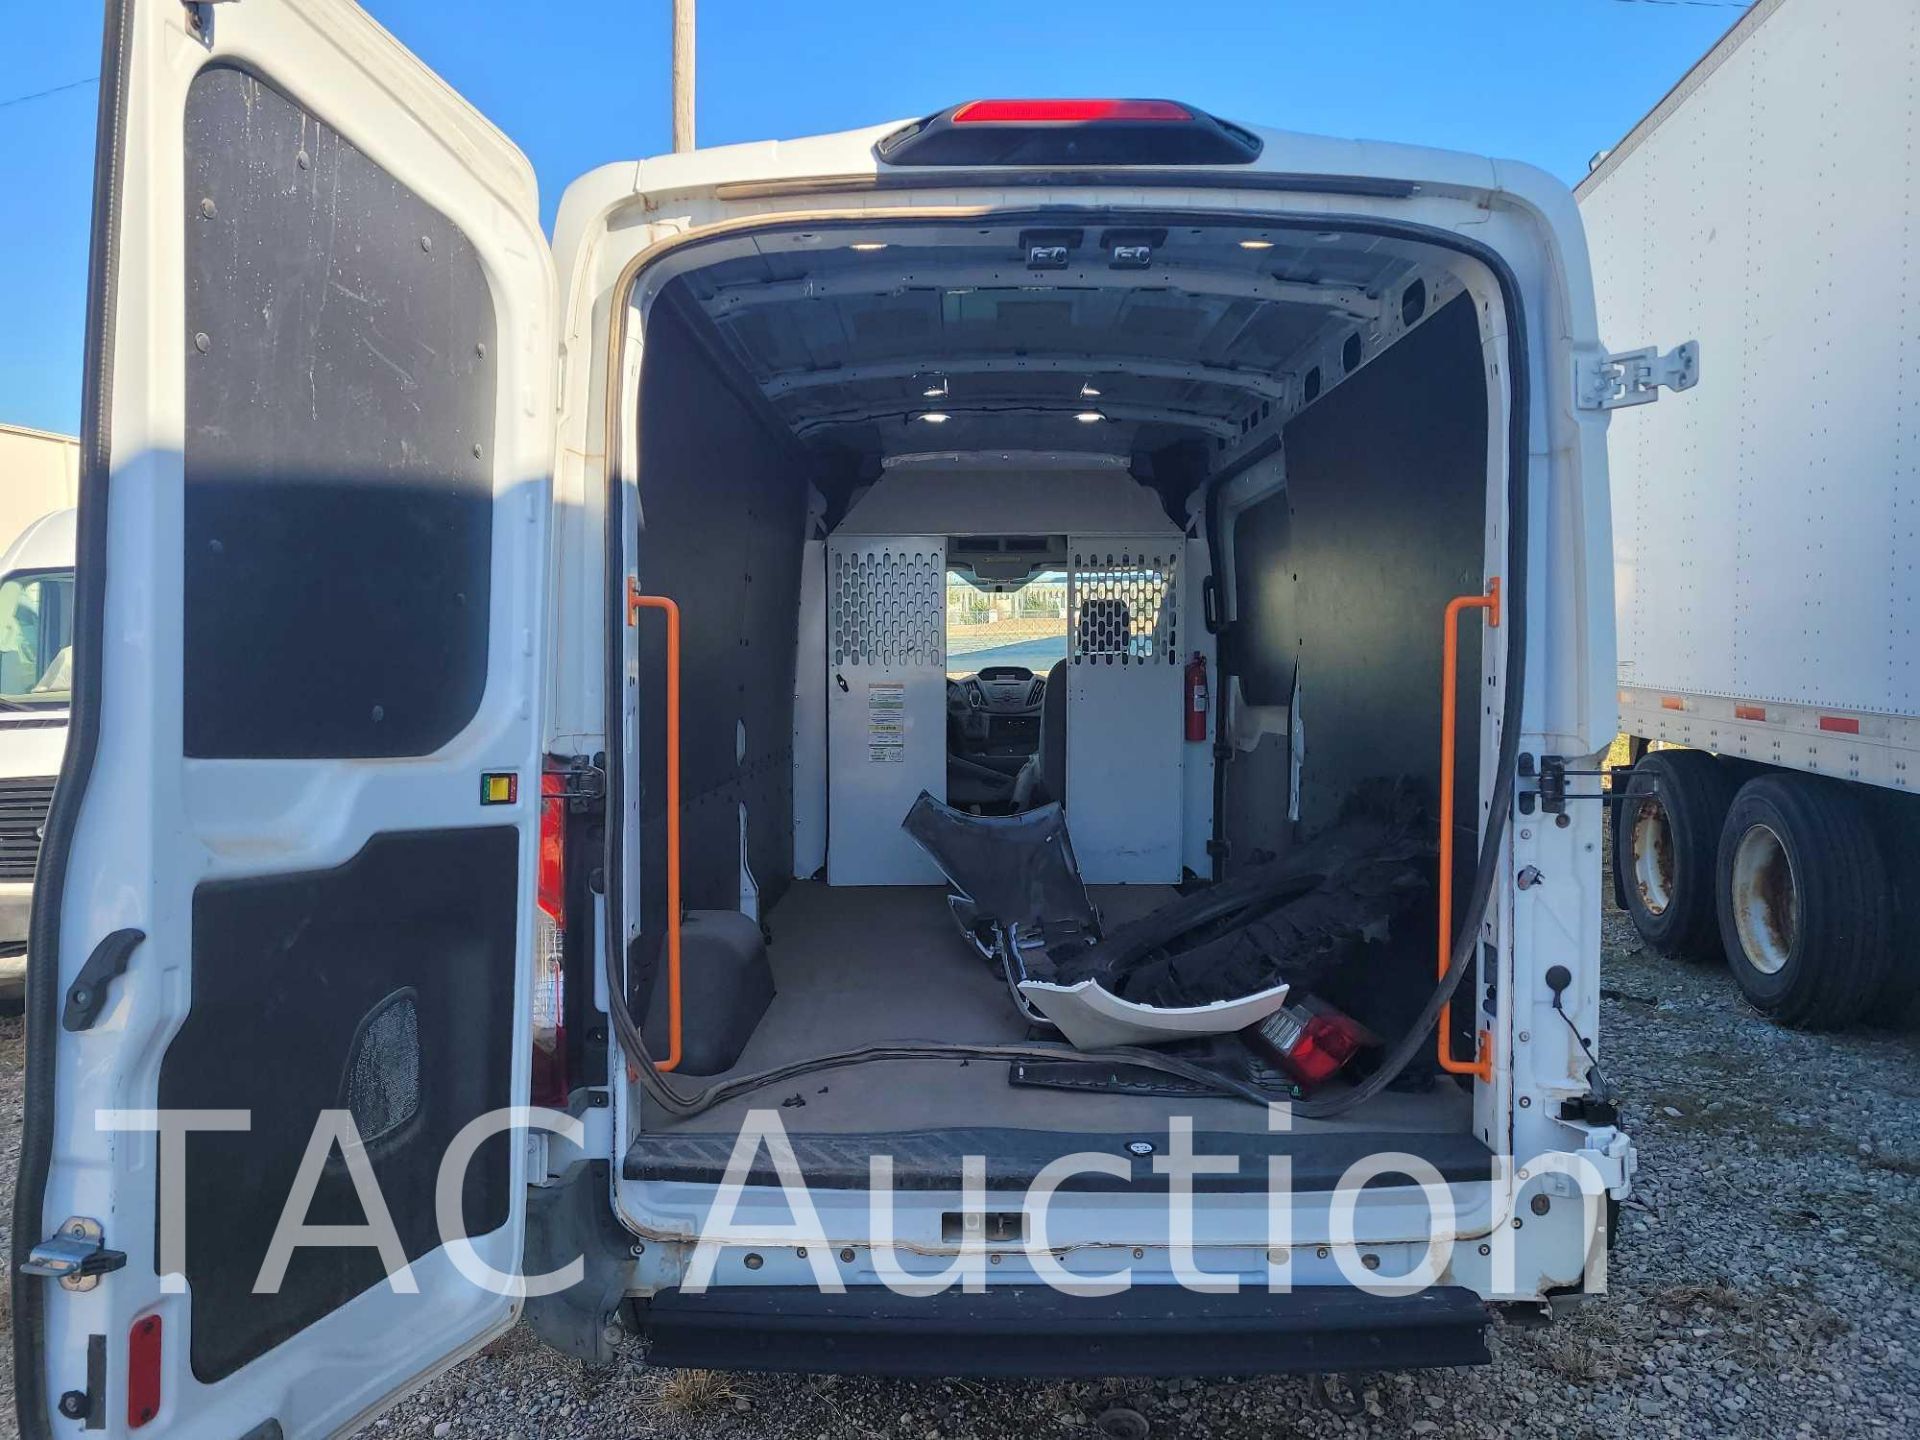 2019 Ford Transit 150 Cargo Van - Image 20 of 40